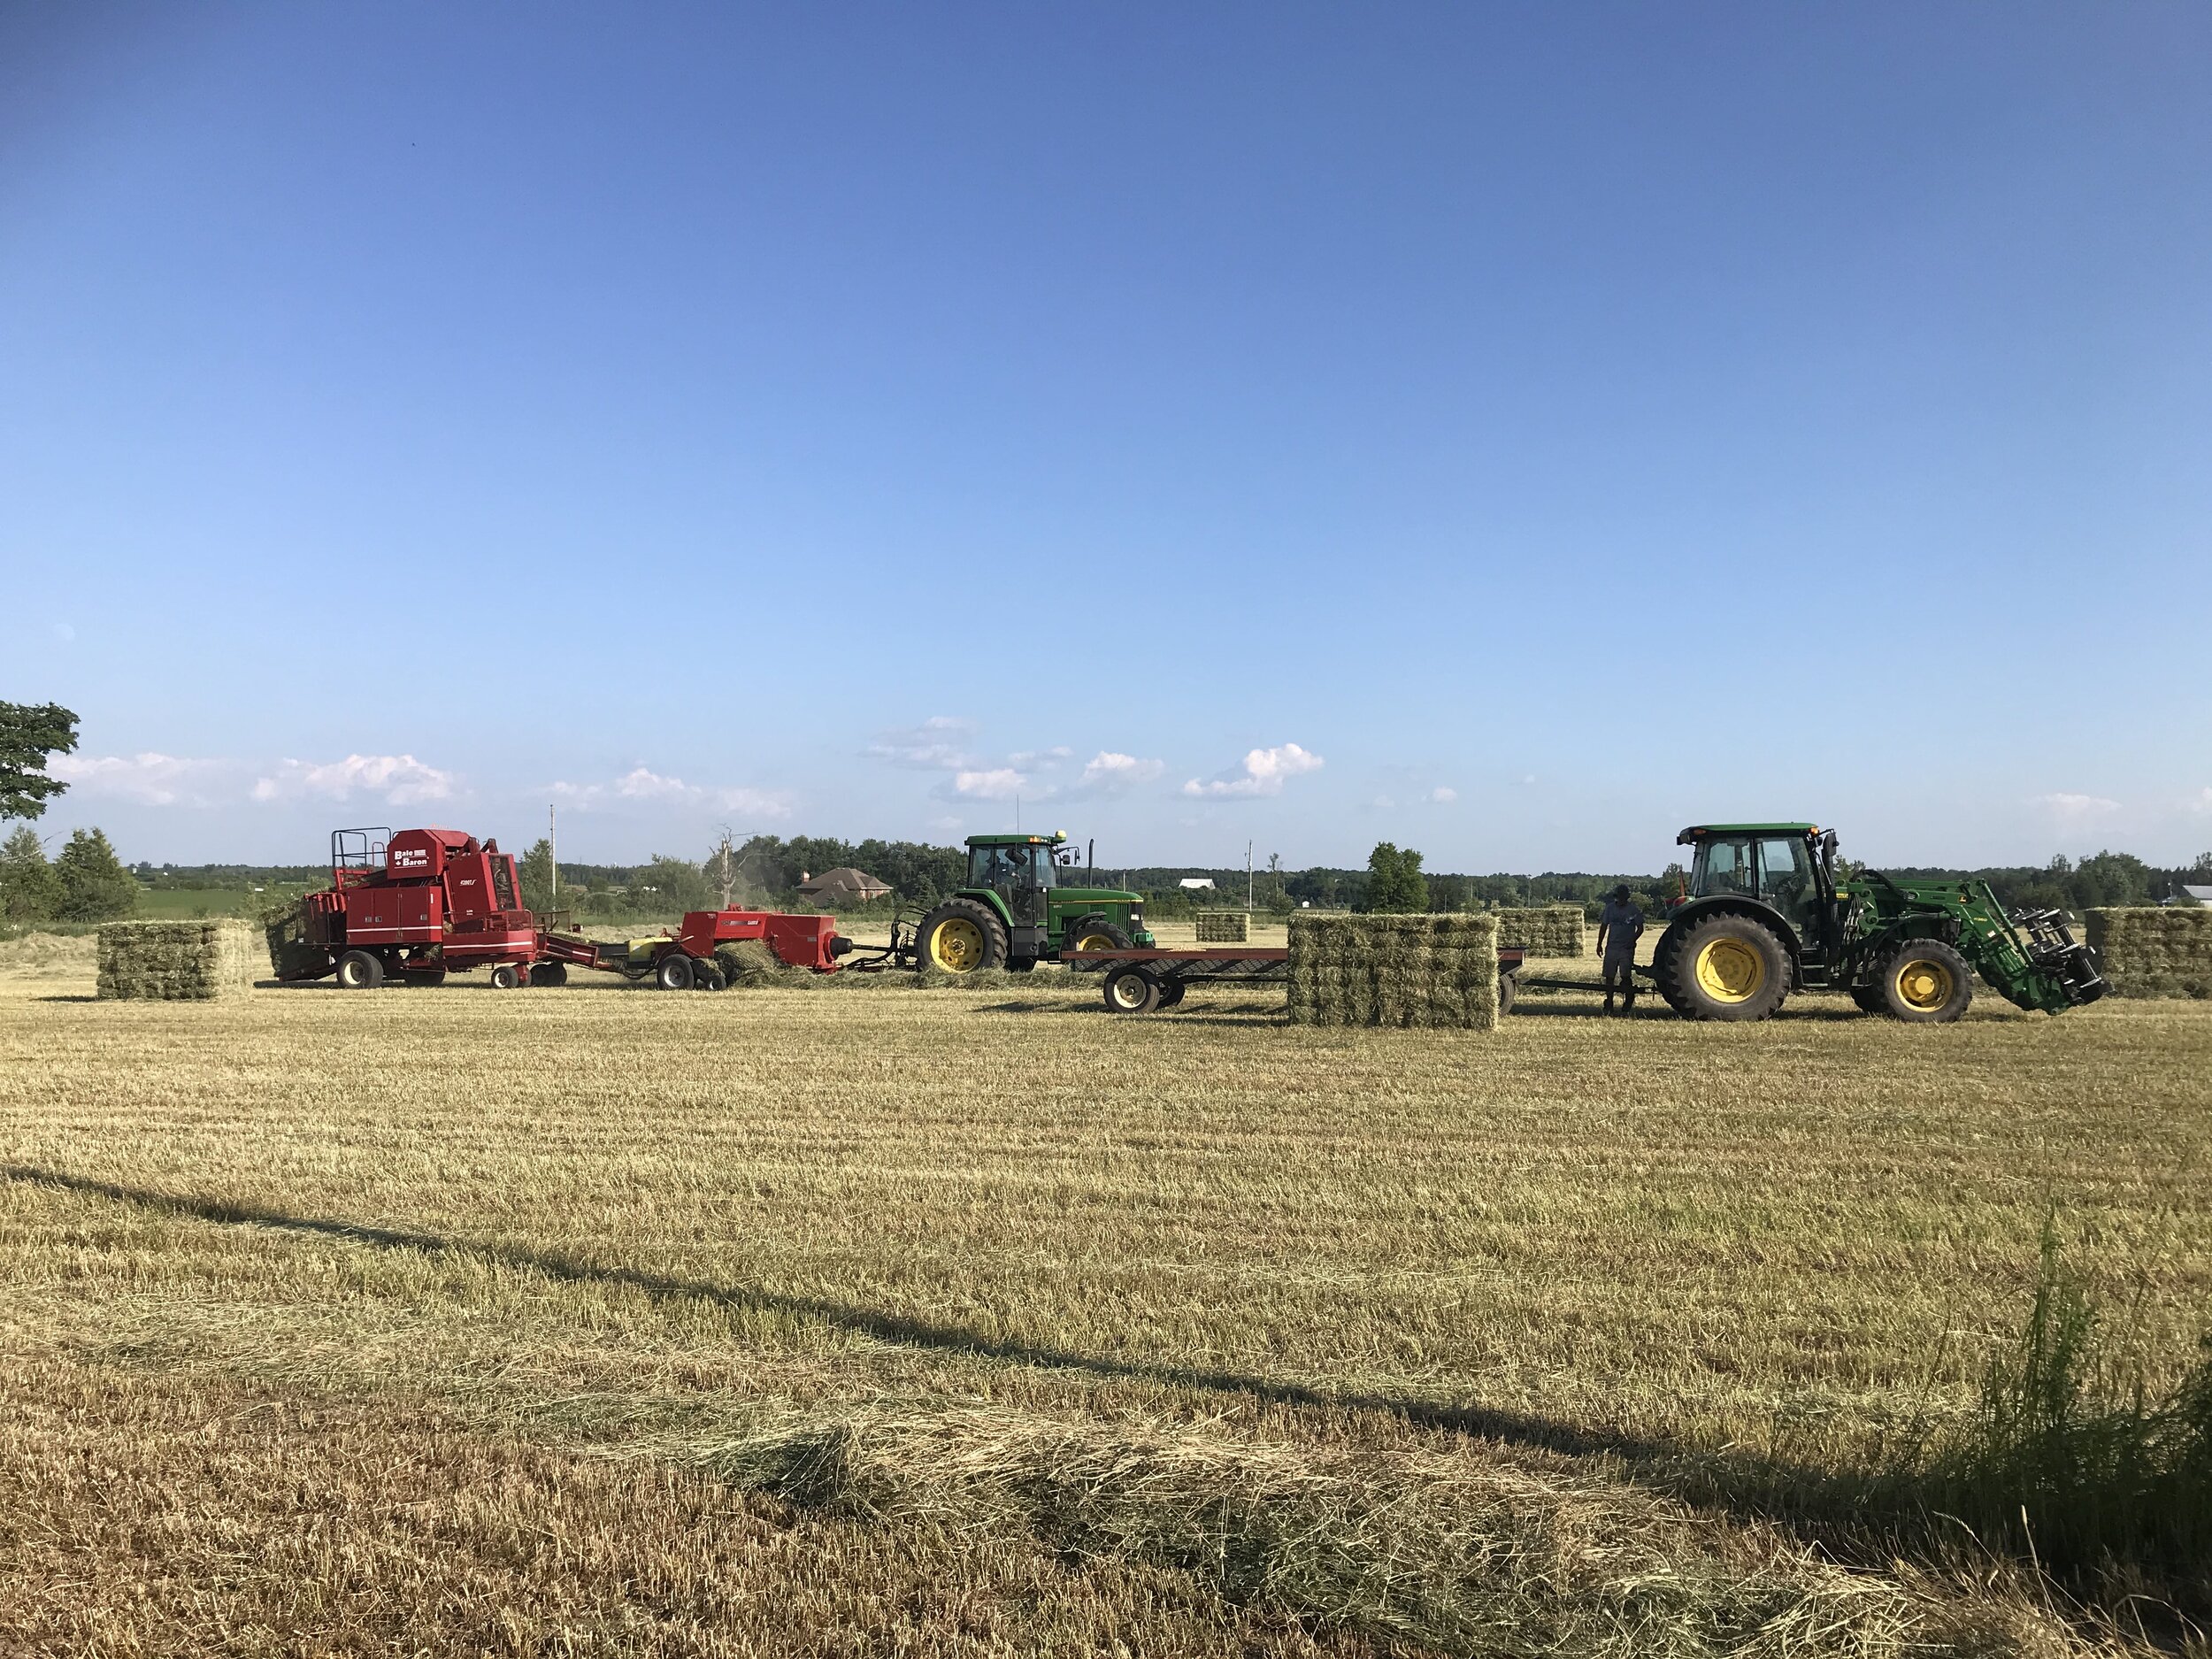 tractors in a beautiful farm field